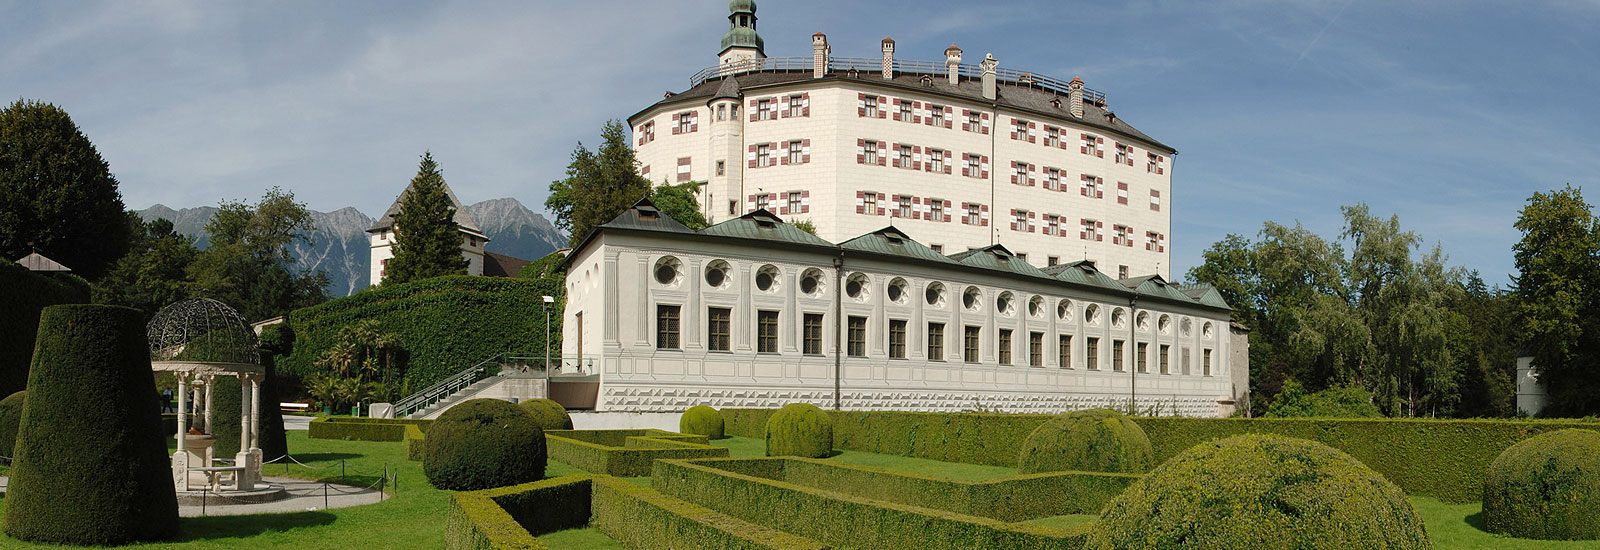 Ausflug Schloss Ambras Innsbruck